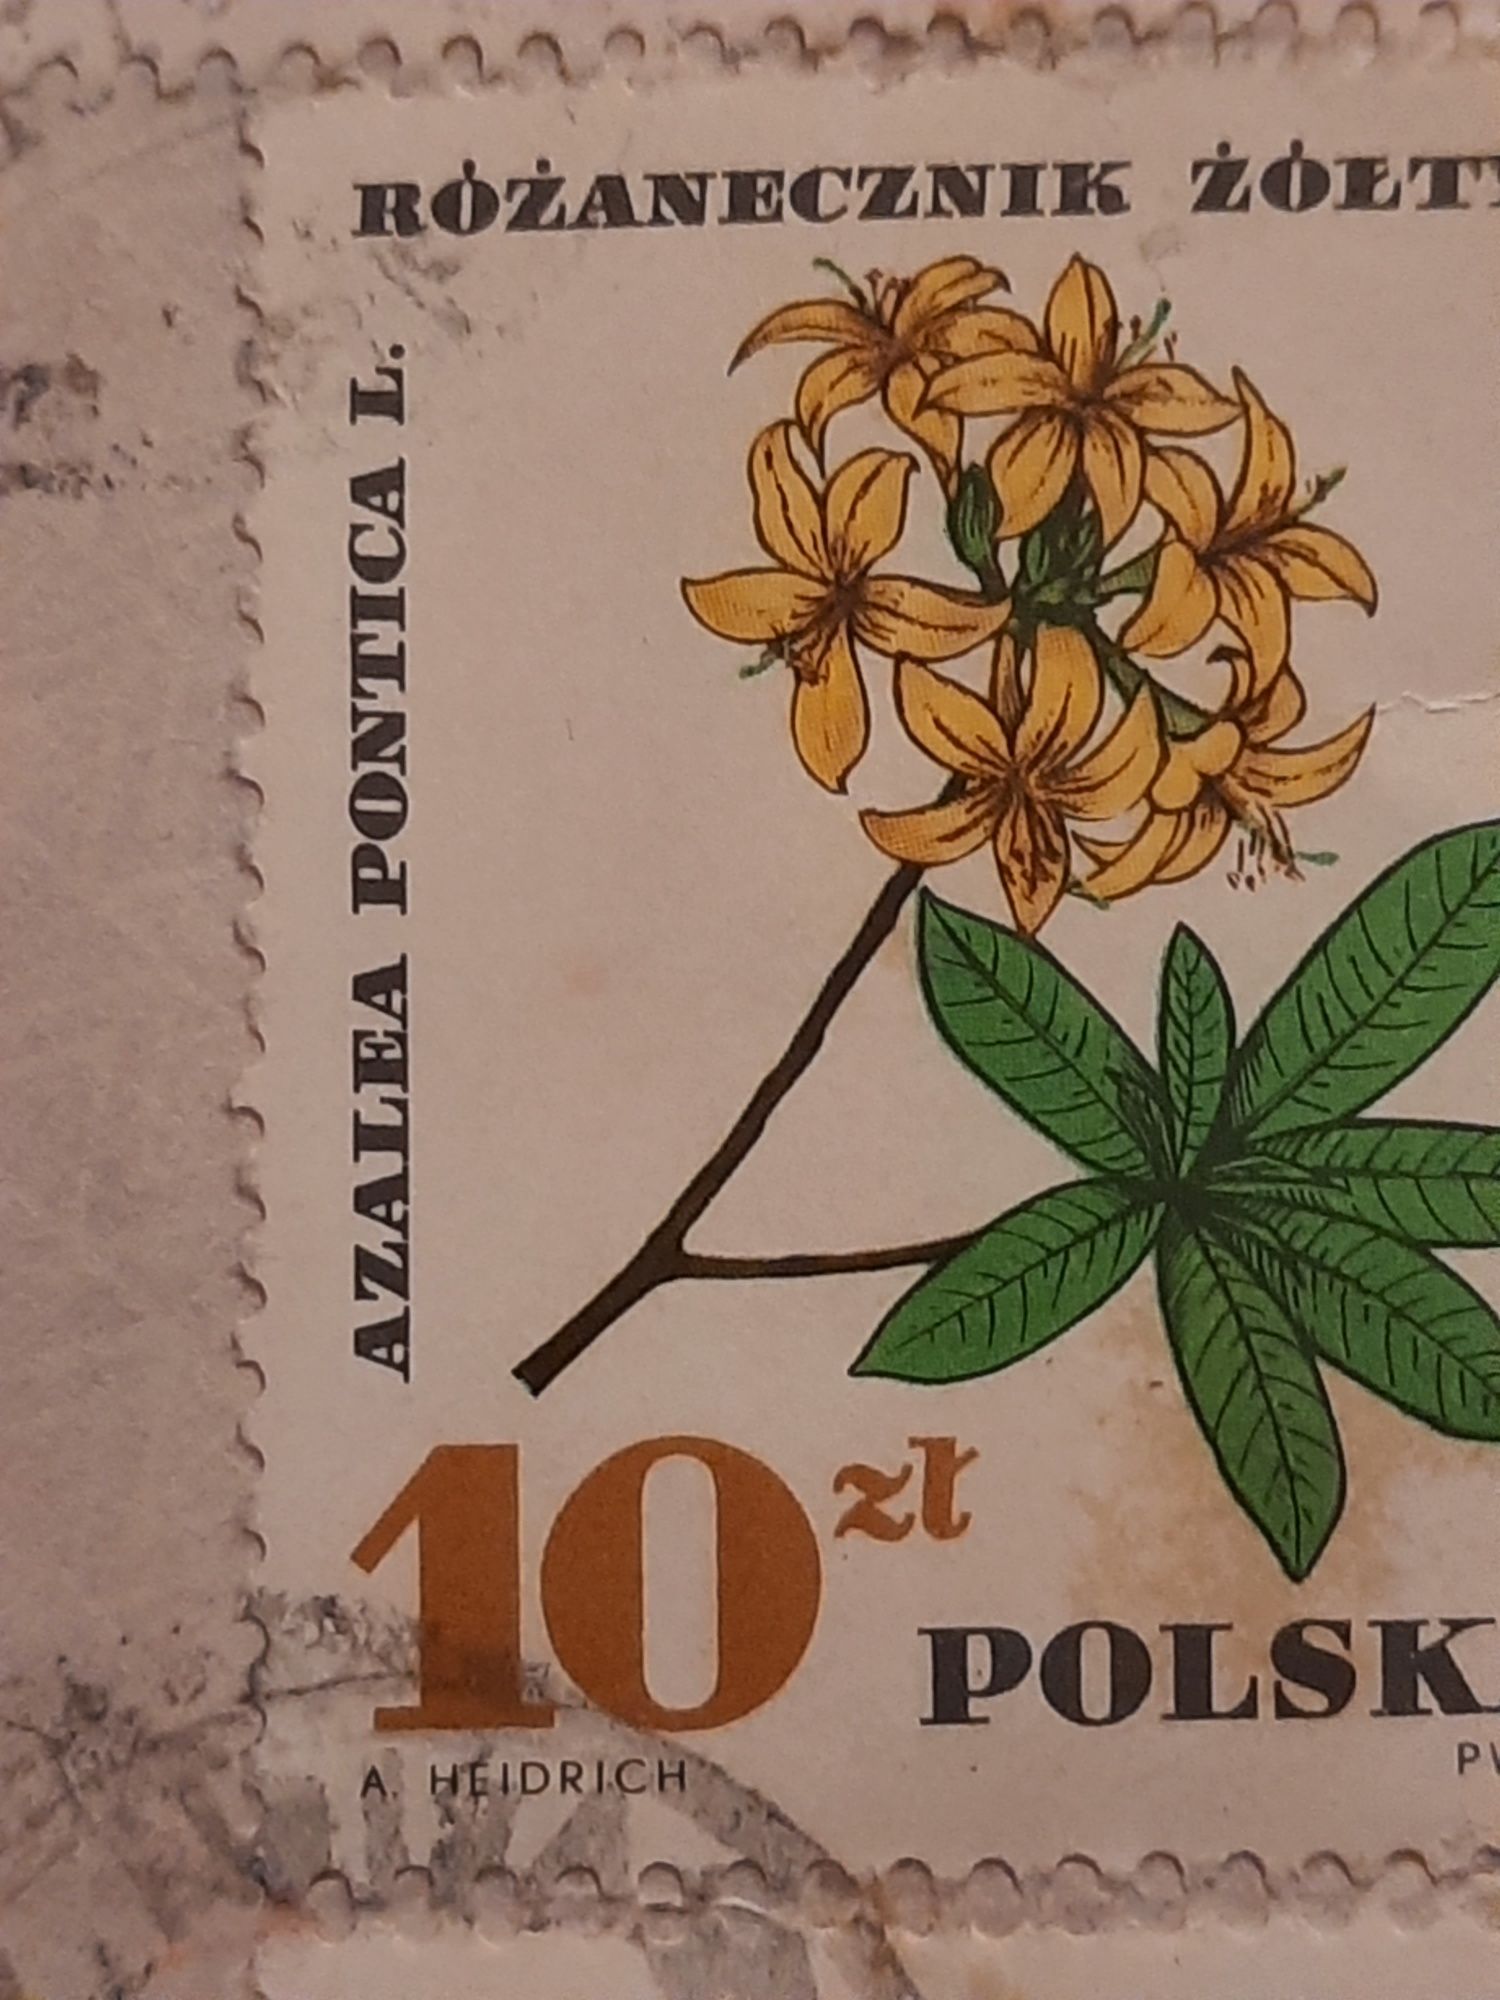 Znaczek pocztowy różanecznik żółty azalea pontica l. 10 złotych